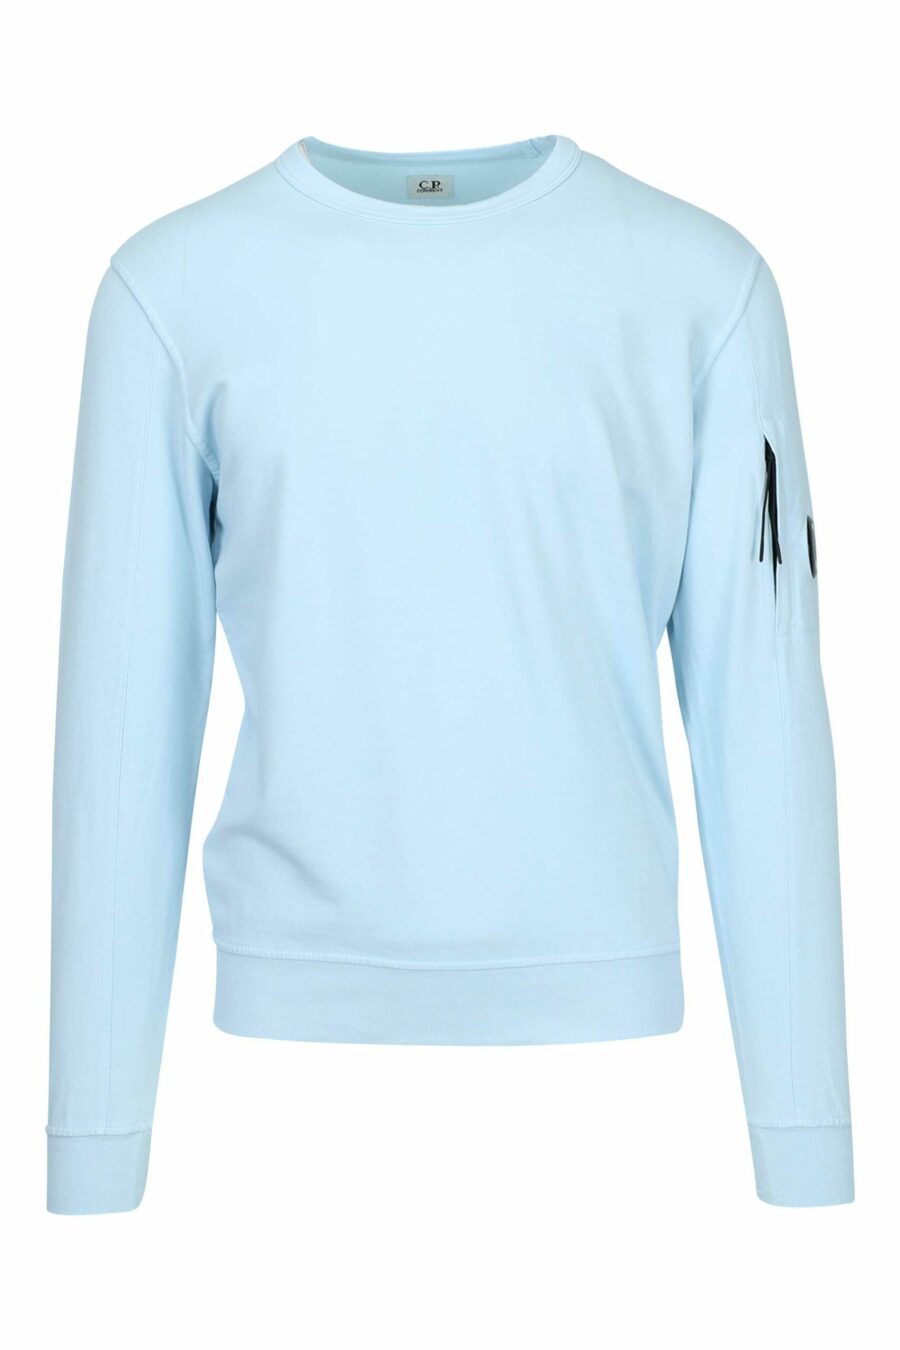 Sweatshirt bleu clair avec poche et lentille mini-logo - 7620943745269 en échelle